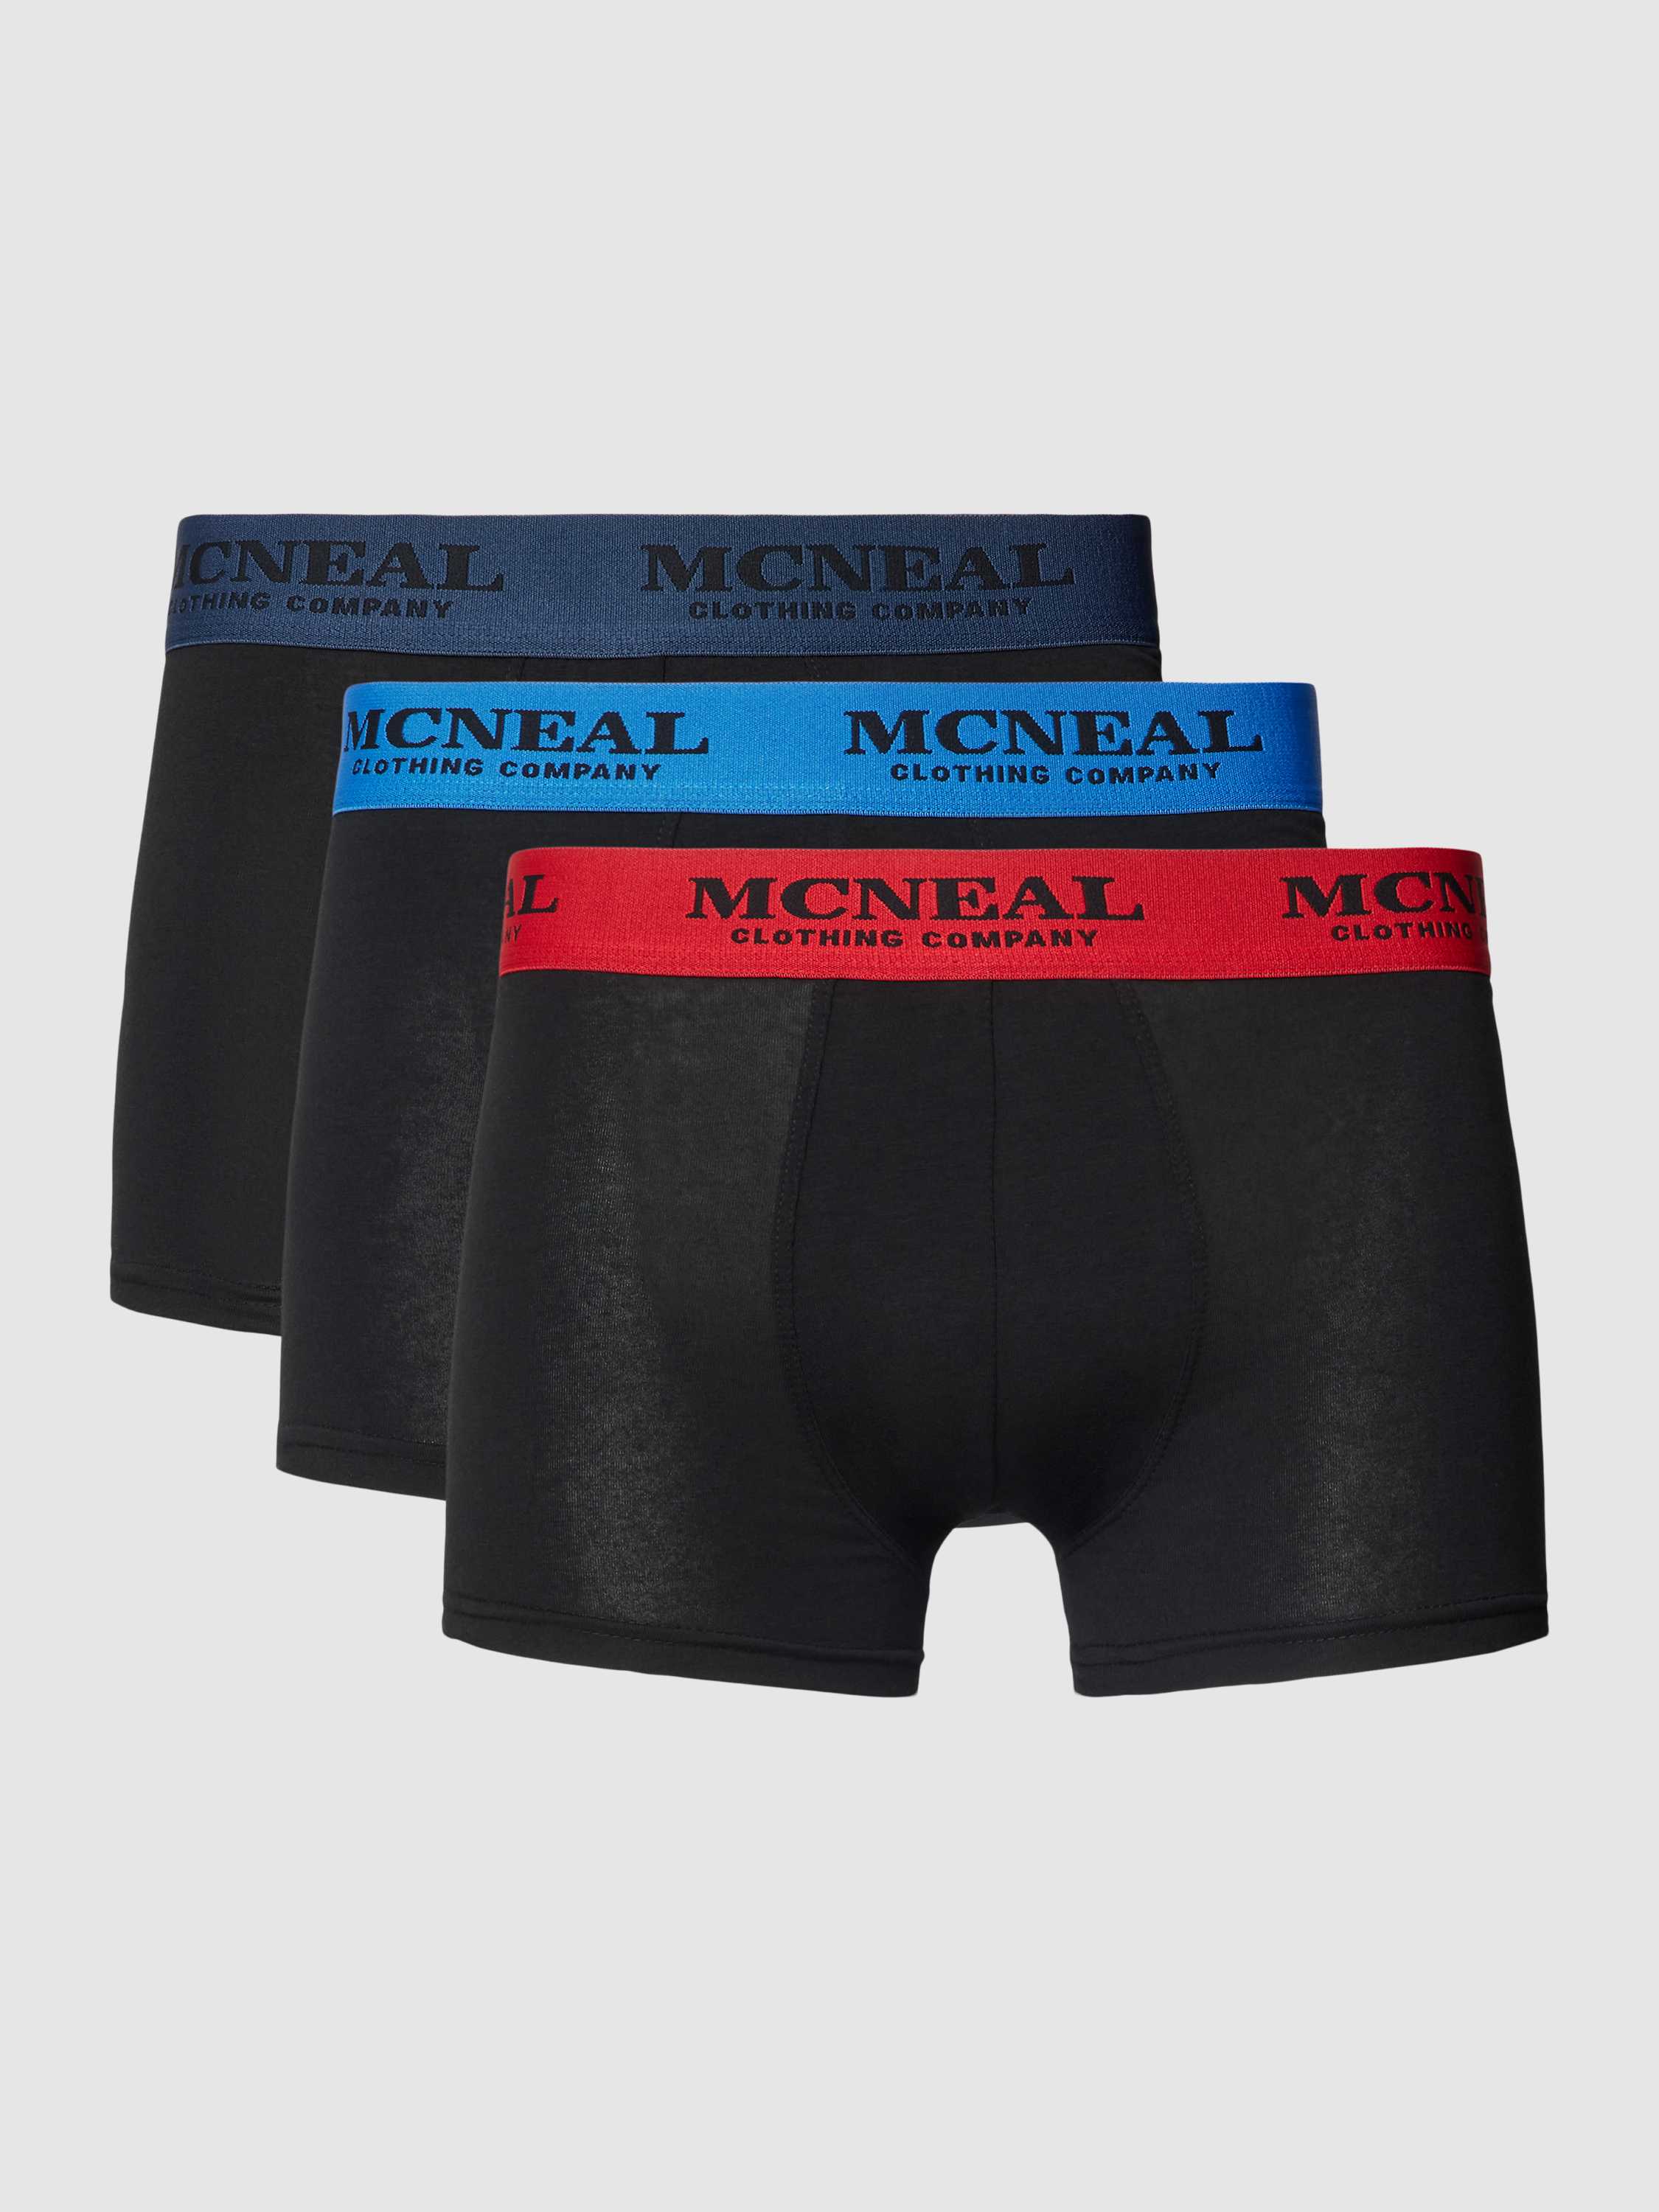 MCNEAL Boxershort met elastische band met logo in een set van 3 stuks